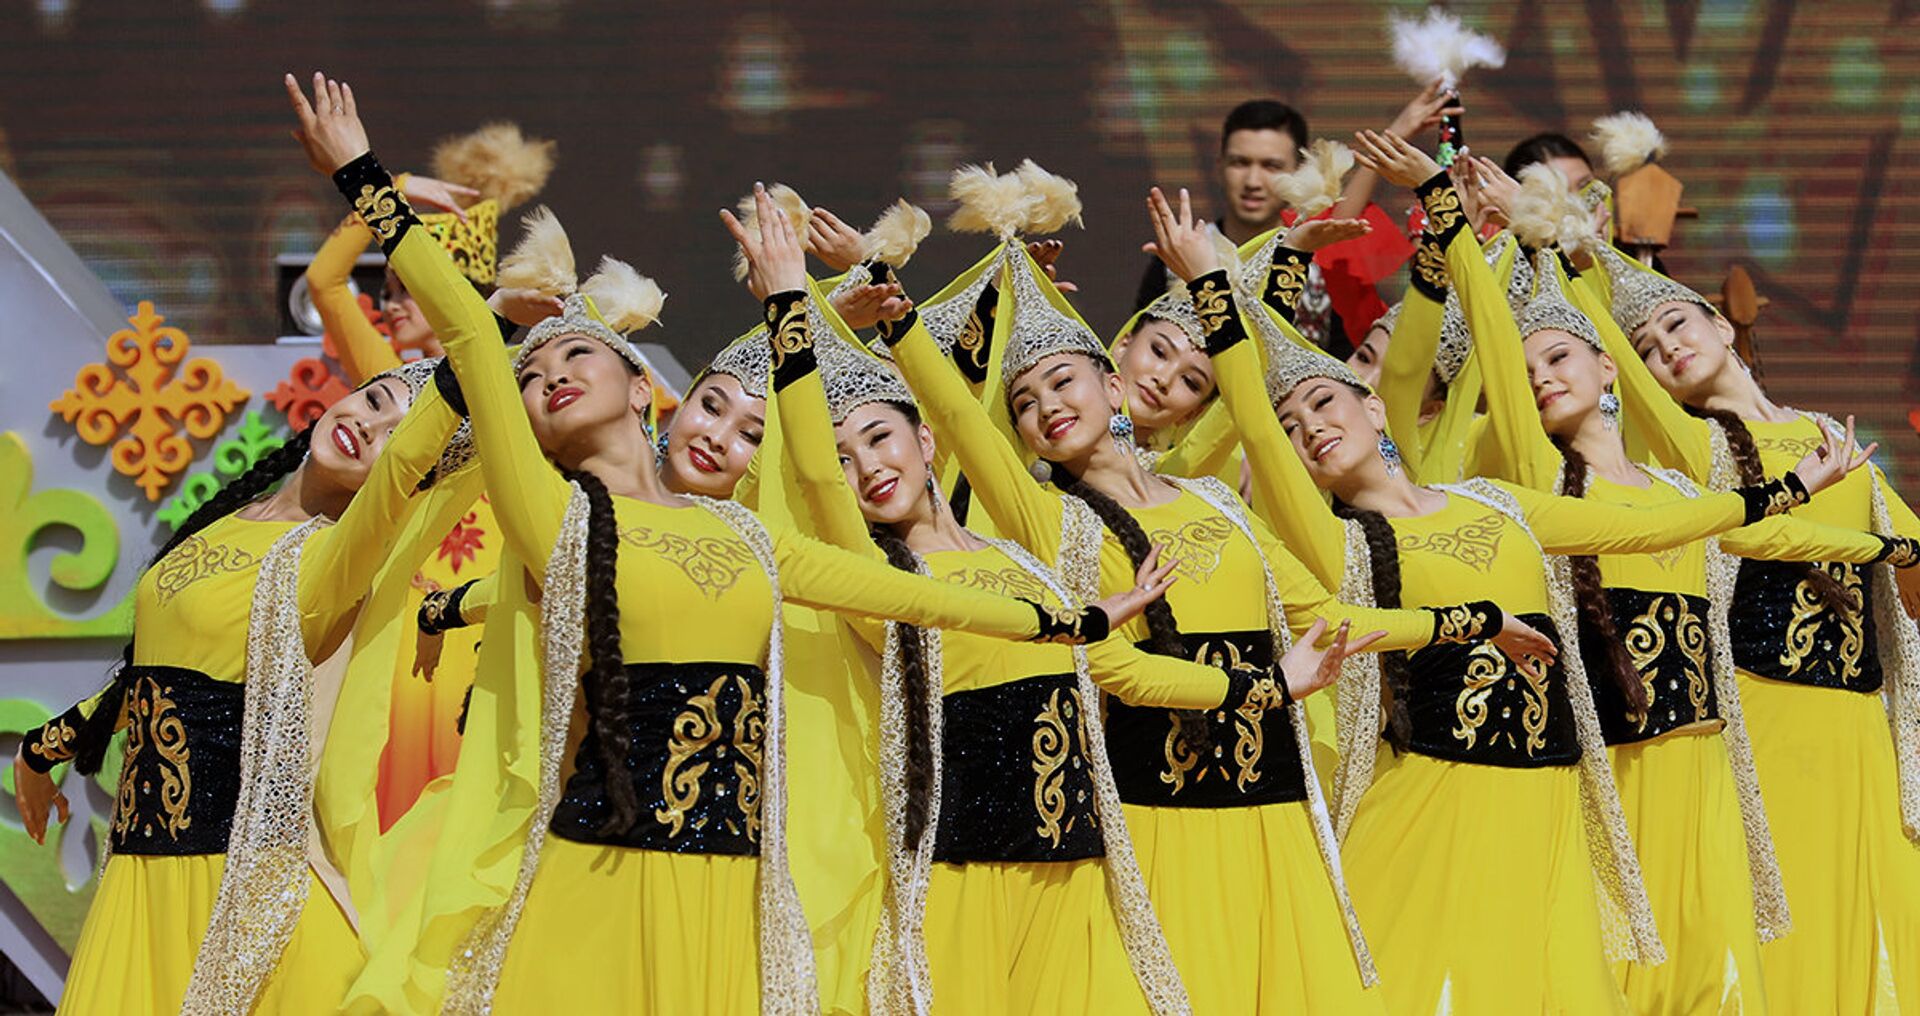 Картинка праздник казахстана. Национальные праздники Казахстана. Наурыз в Казахстане. Казахский танец. Казахские танцы на Наурыз.